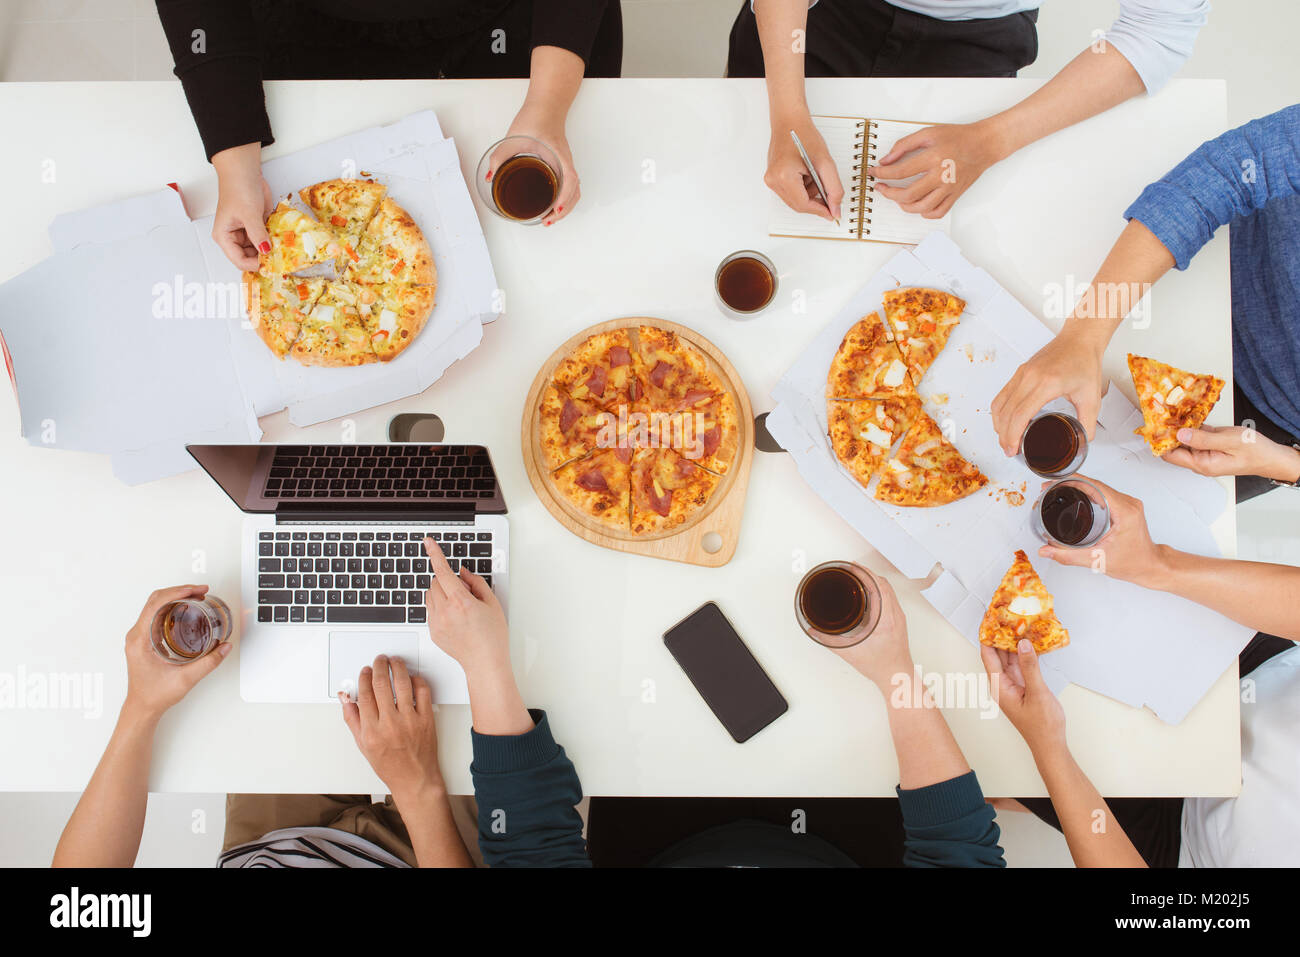 Le déjeuner et le peuple concept. Happy business team eating pizza in office Banque D'Images